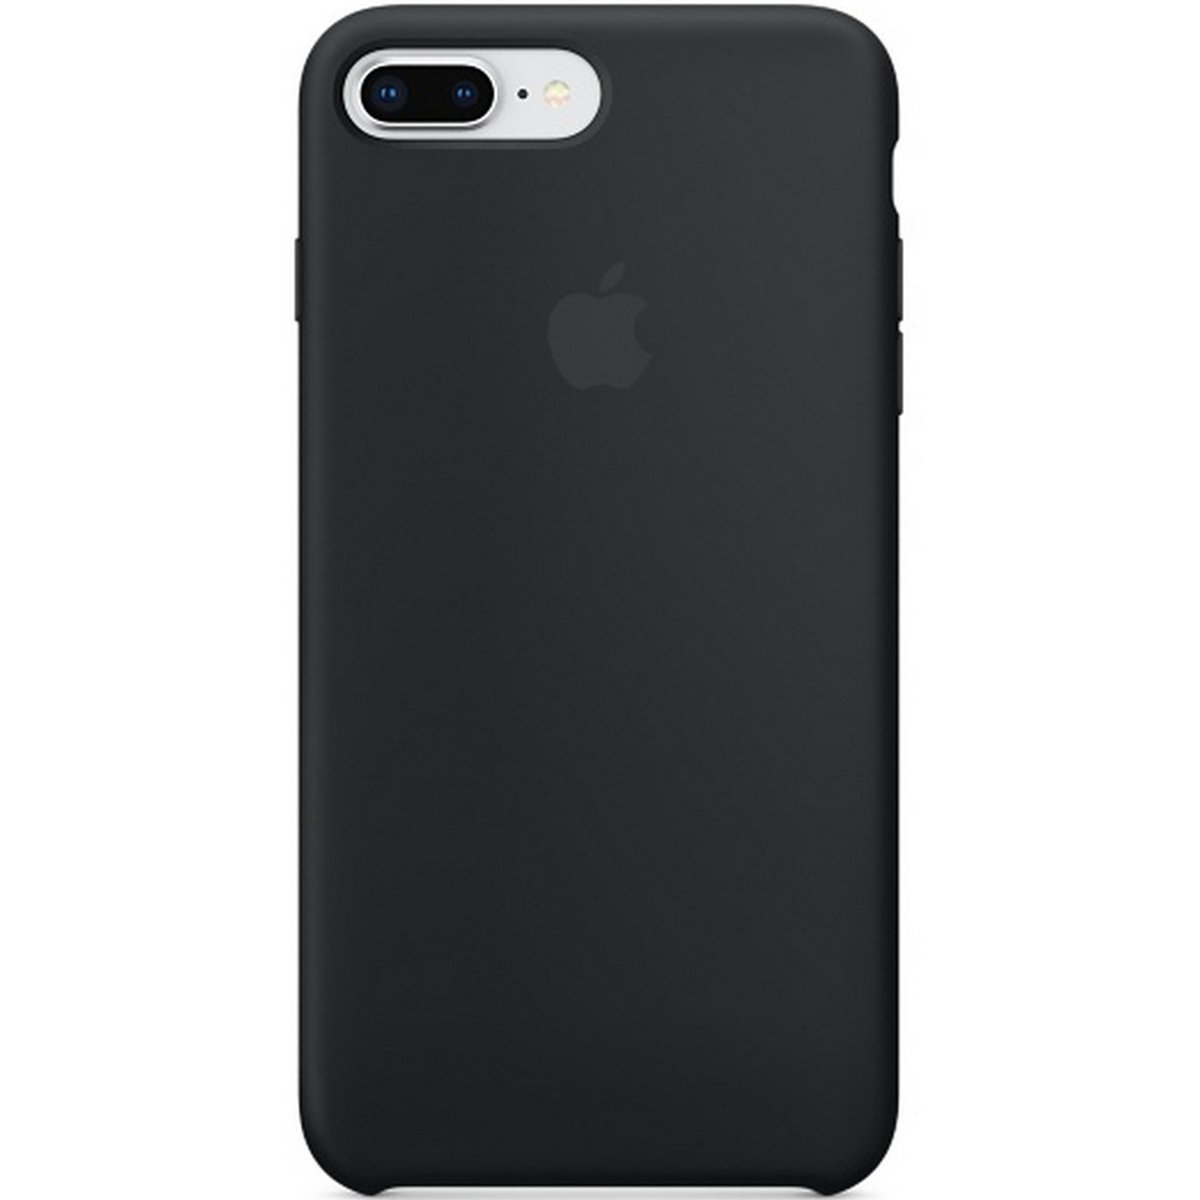 Apple iPhone 8 Plus Silicone Case Black